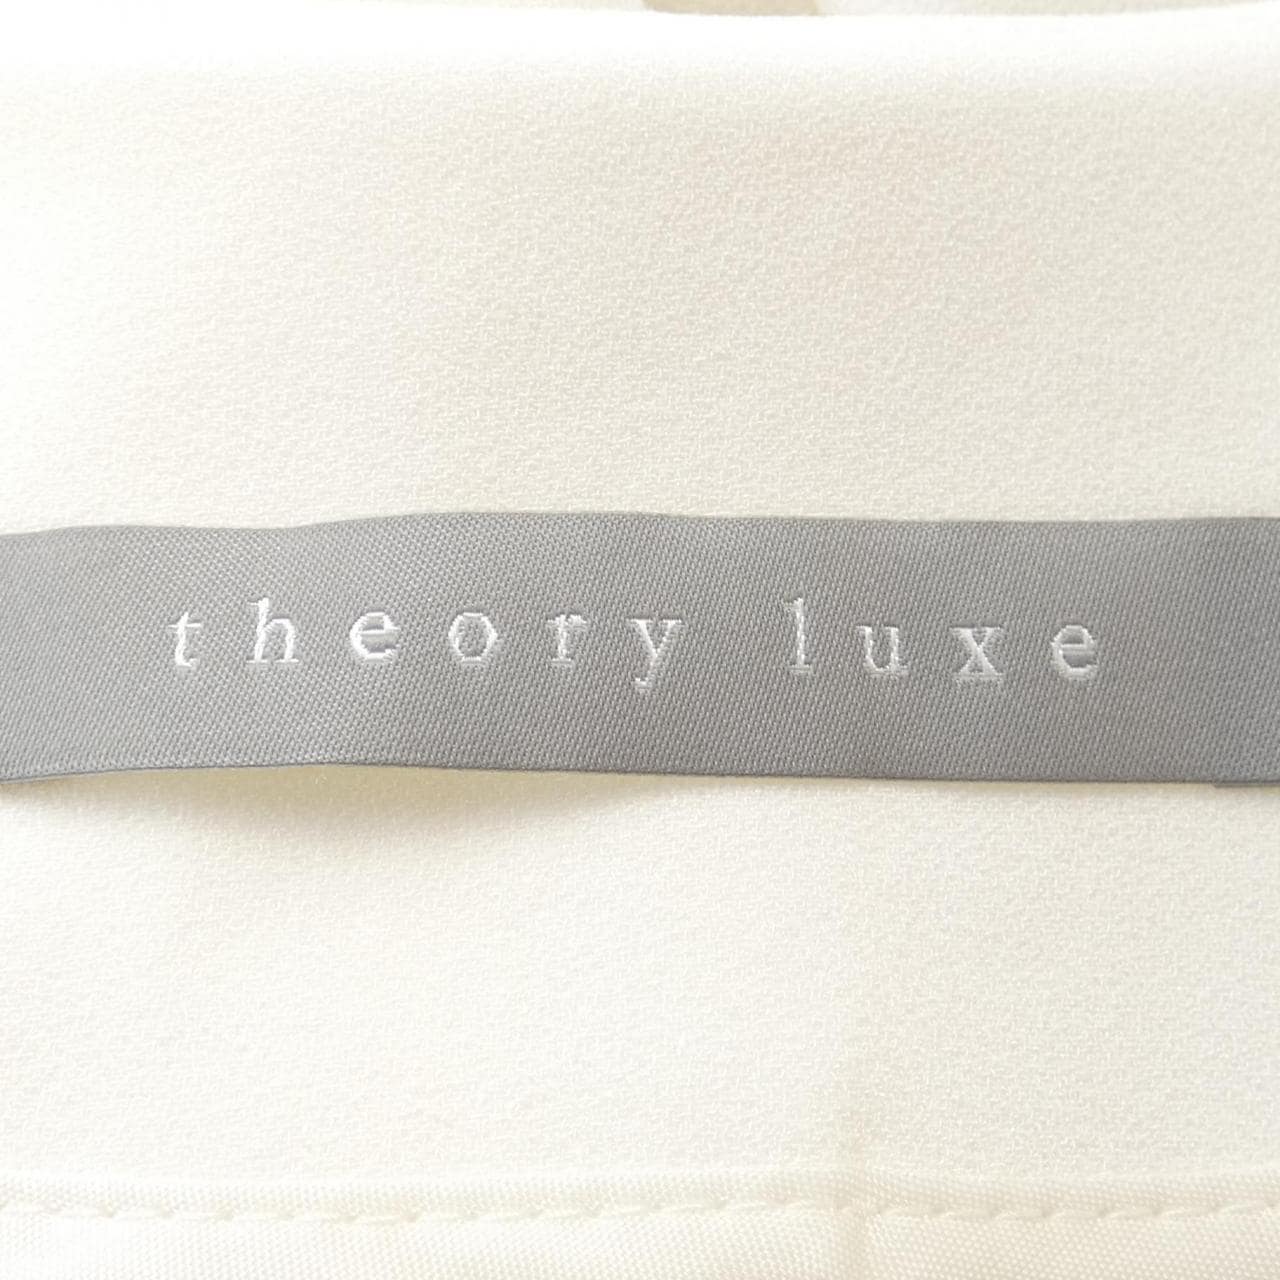 セオリーリュクス Theory luxe ジャケット